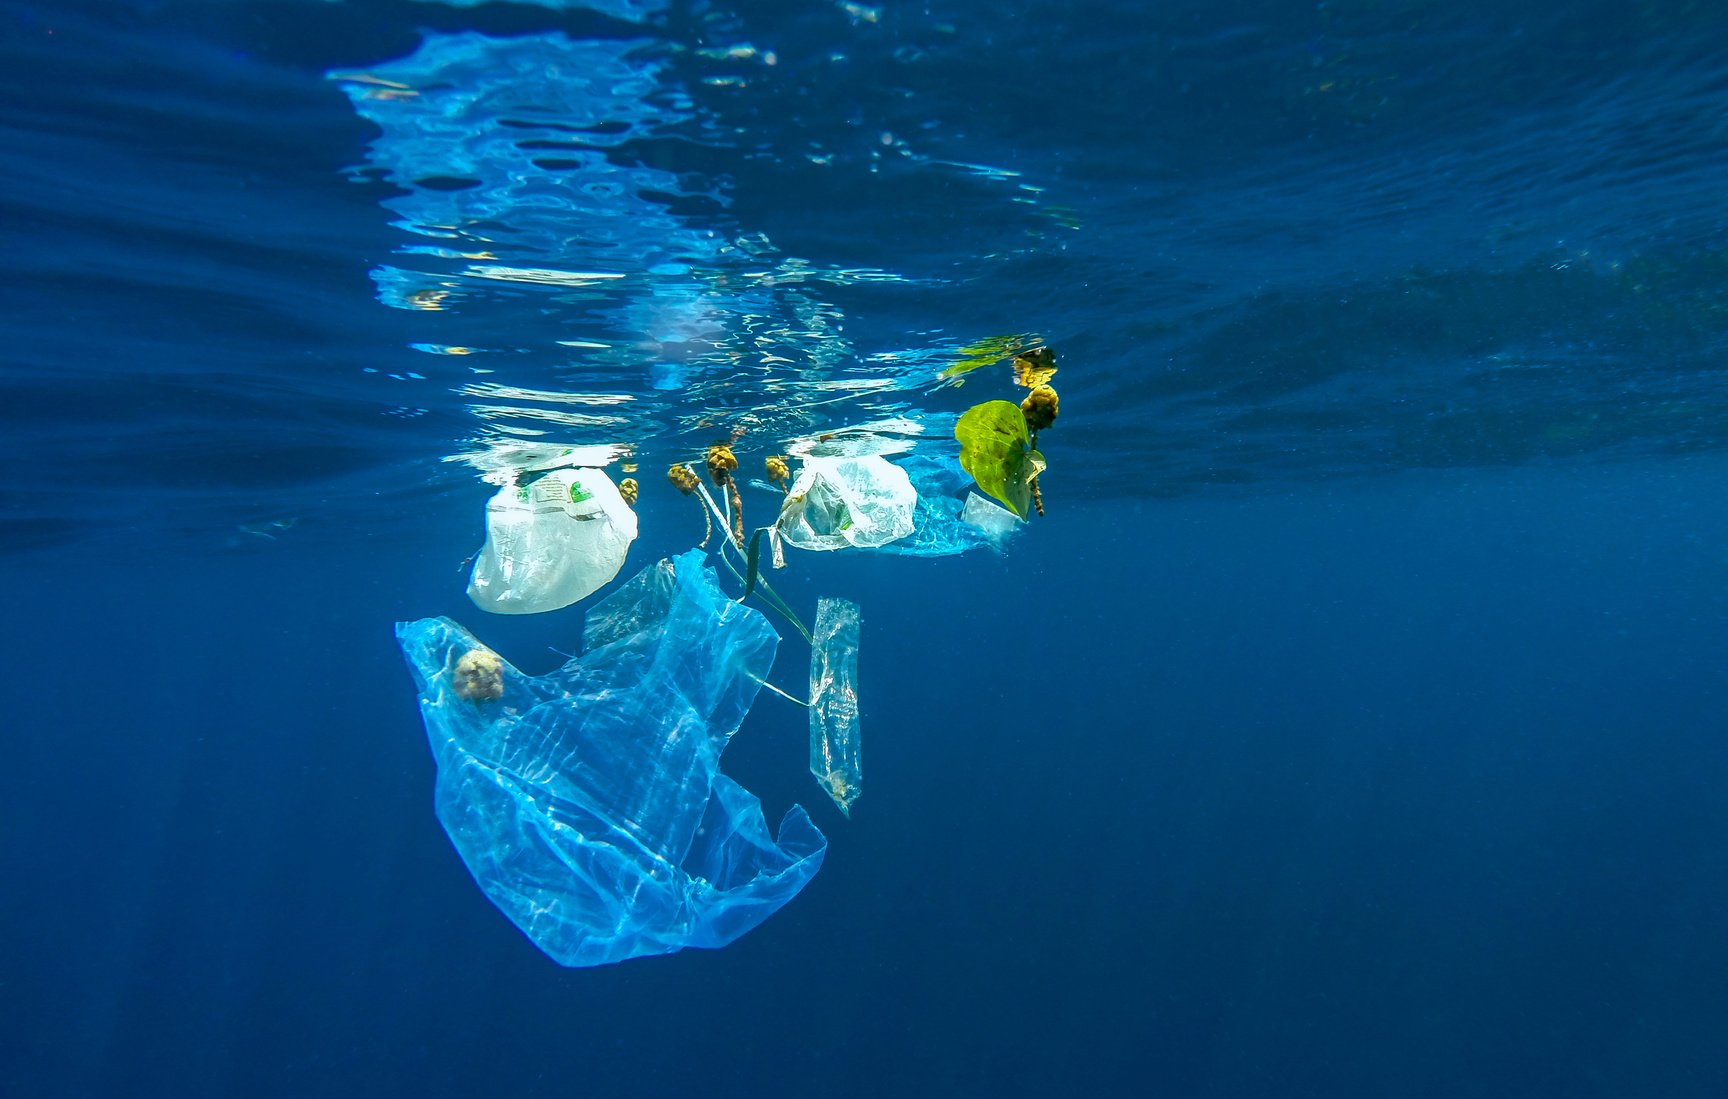 Δεν θα υπάρξουν απώλειες θέσεων εργασίας με την κατάργηση της δωρεάν διάθεσης πλαστικών σακουλών. Χρειάζεται εκστρατεία για την καλλιέργεια περιβαλλοντολογικής συνείδησης στους καταναλωτές